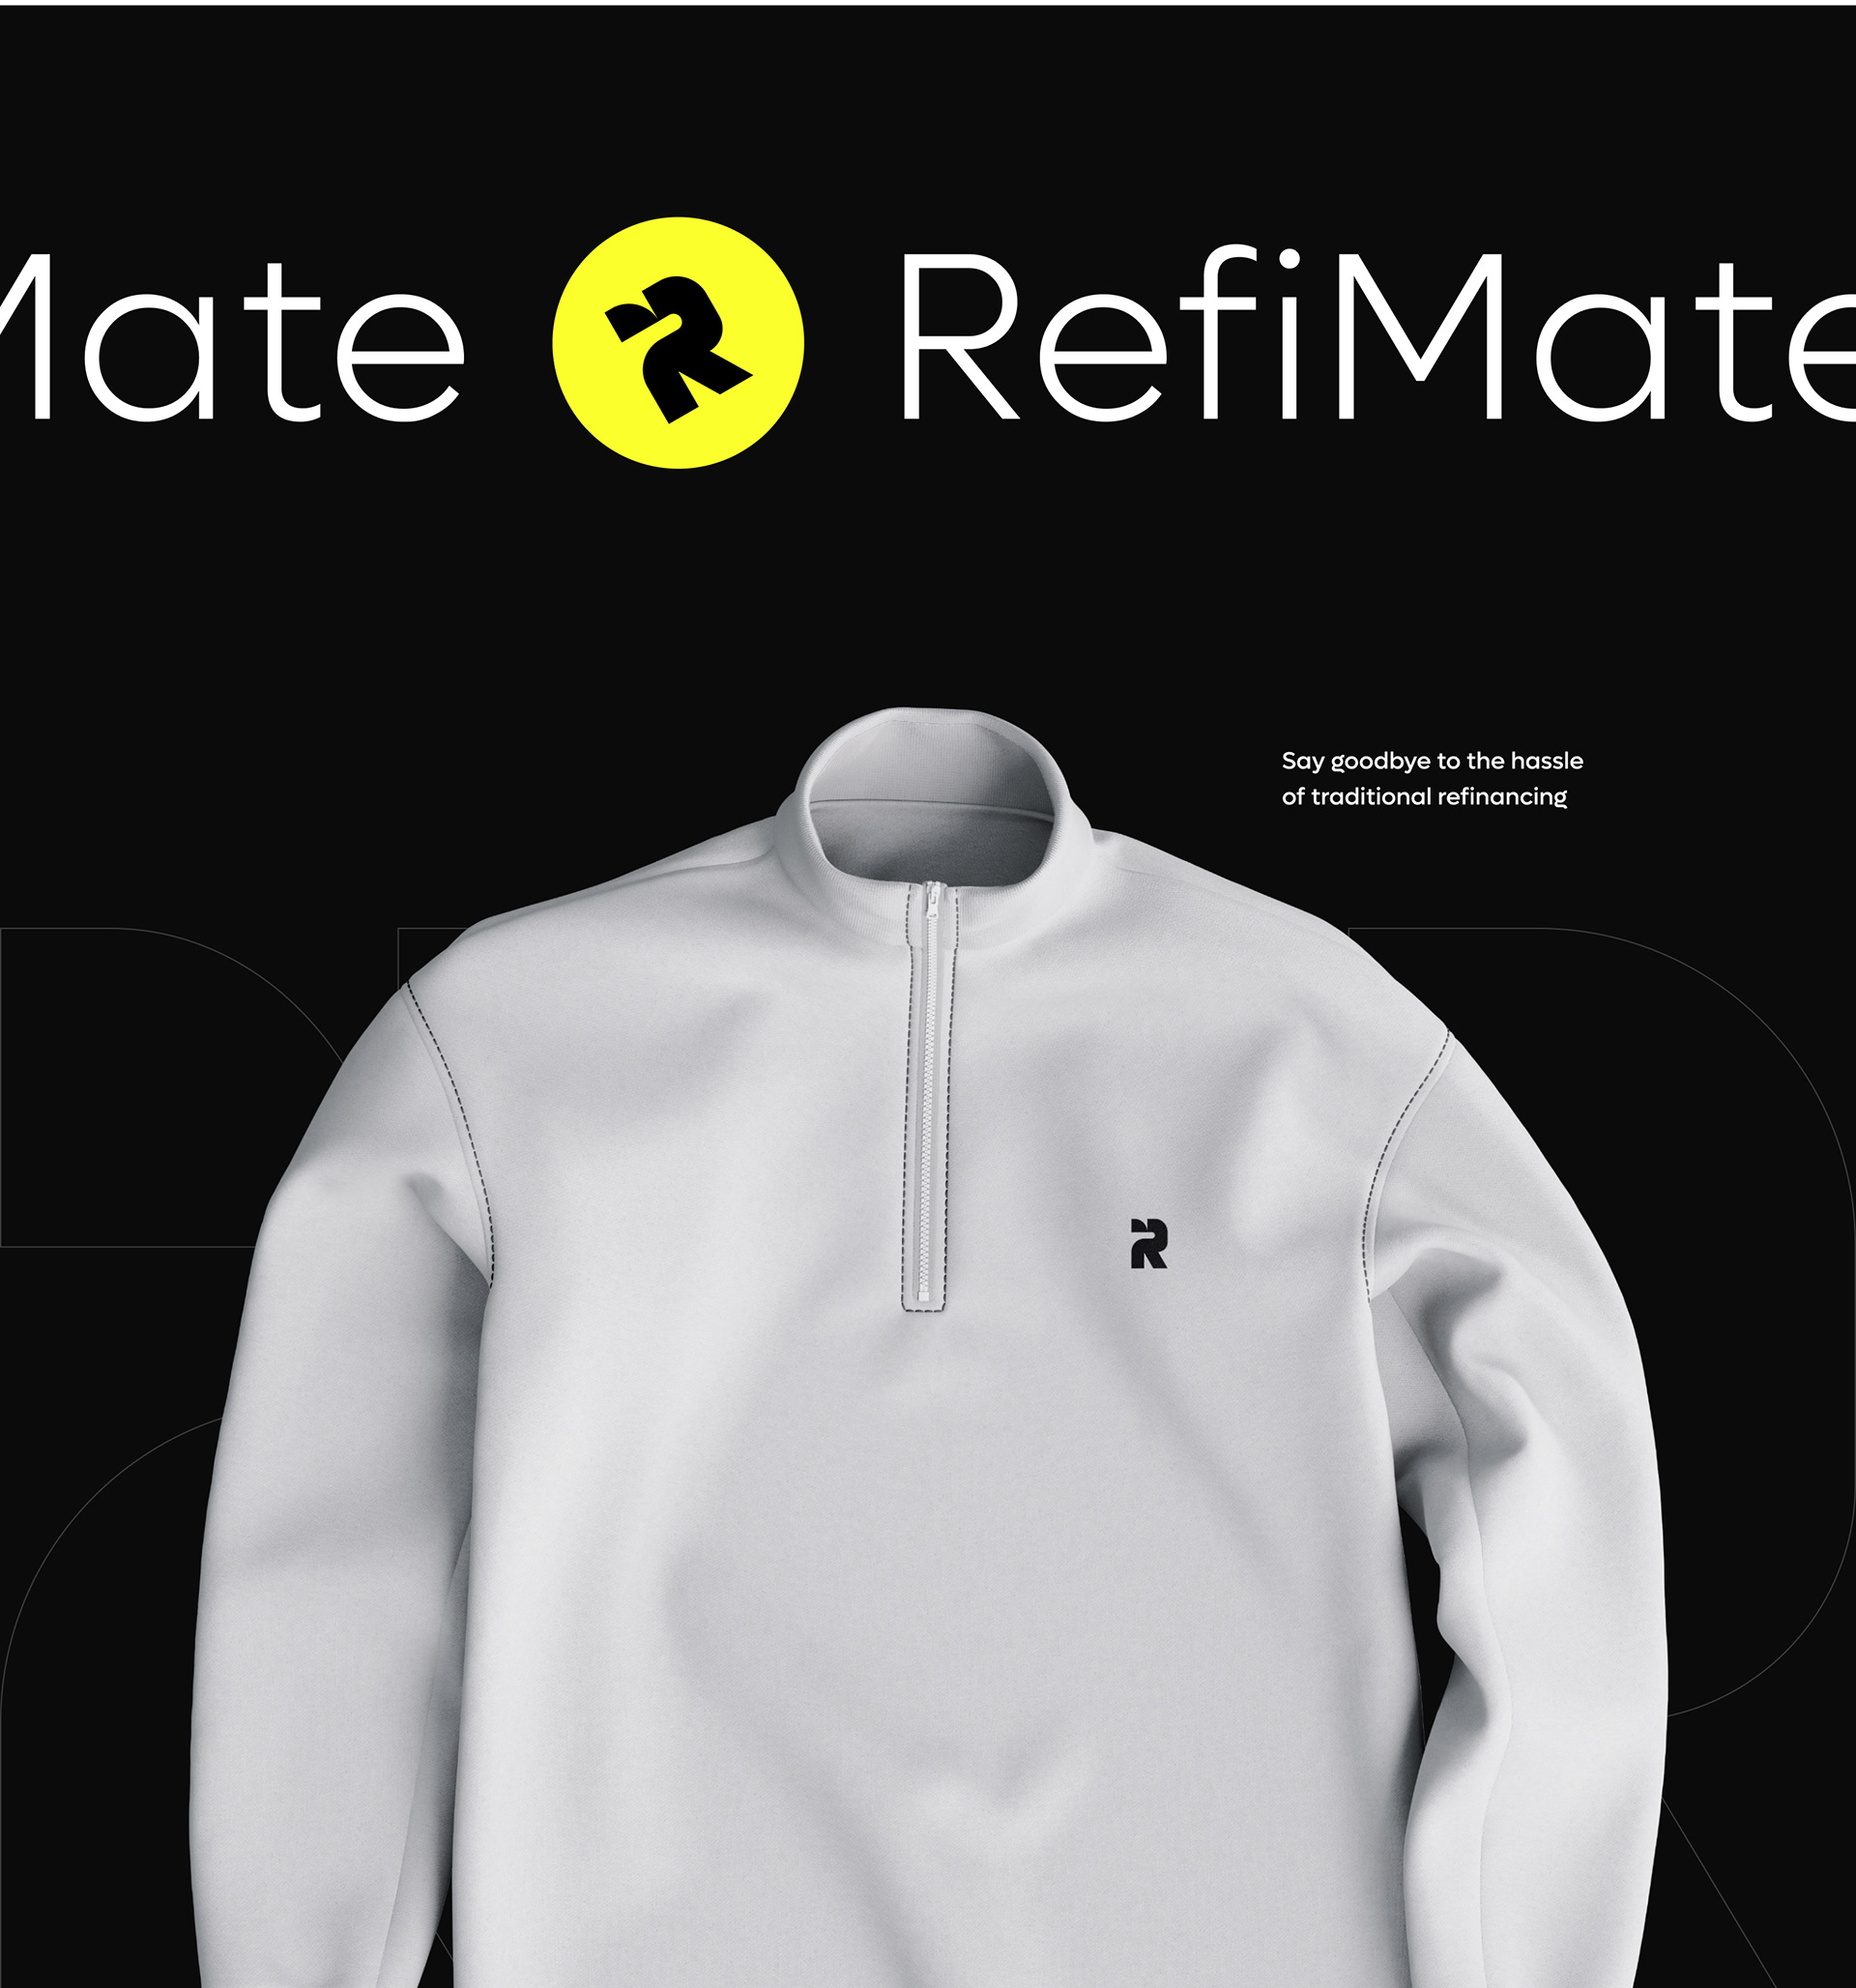 RefiMate-Finance-Mobile-App-UX-UI-Design